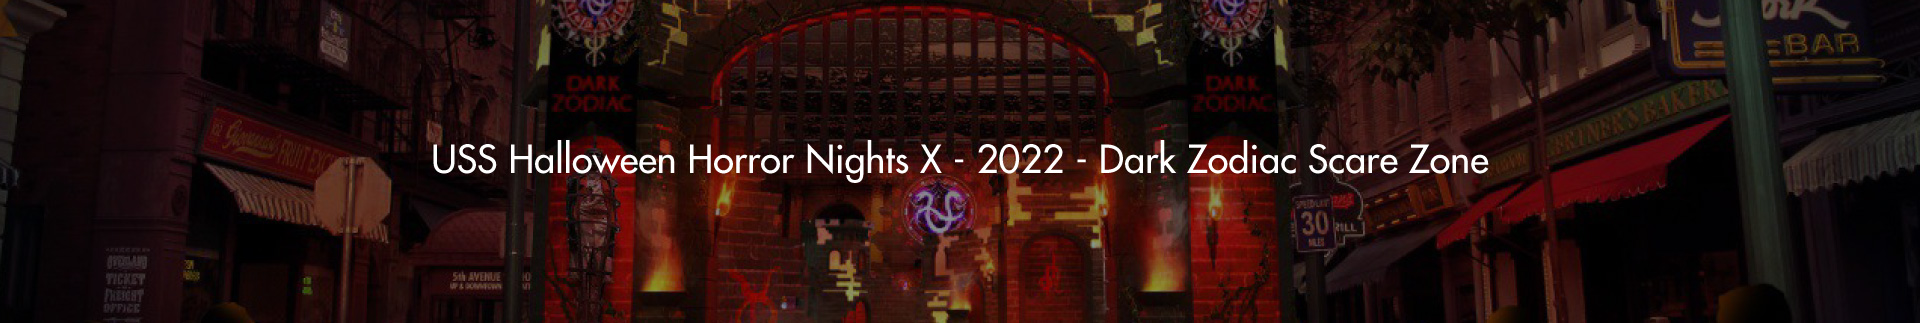 USS Halloween Horror Nights X – 2022 – Dark Zodiac Scare Zone